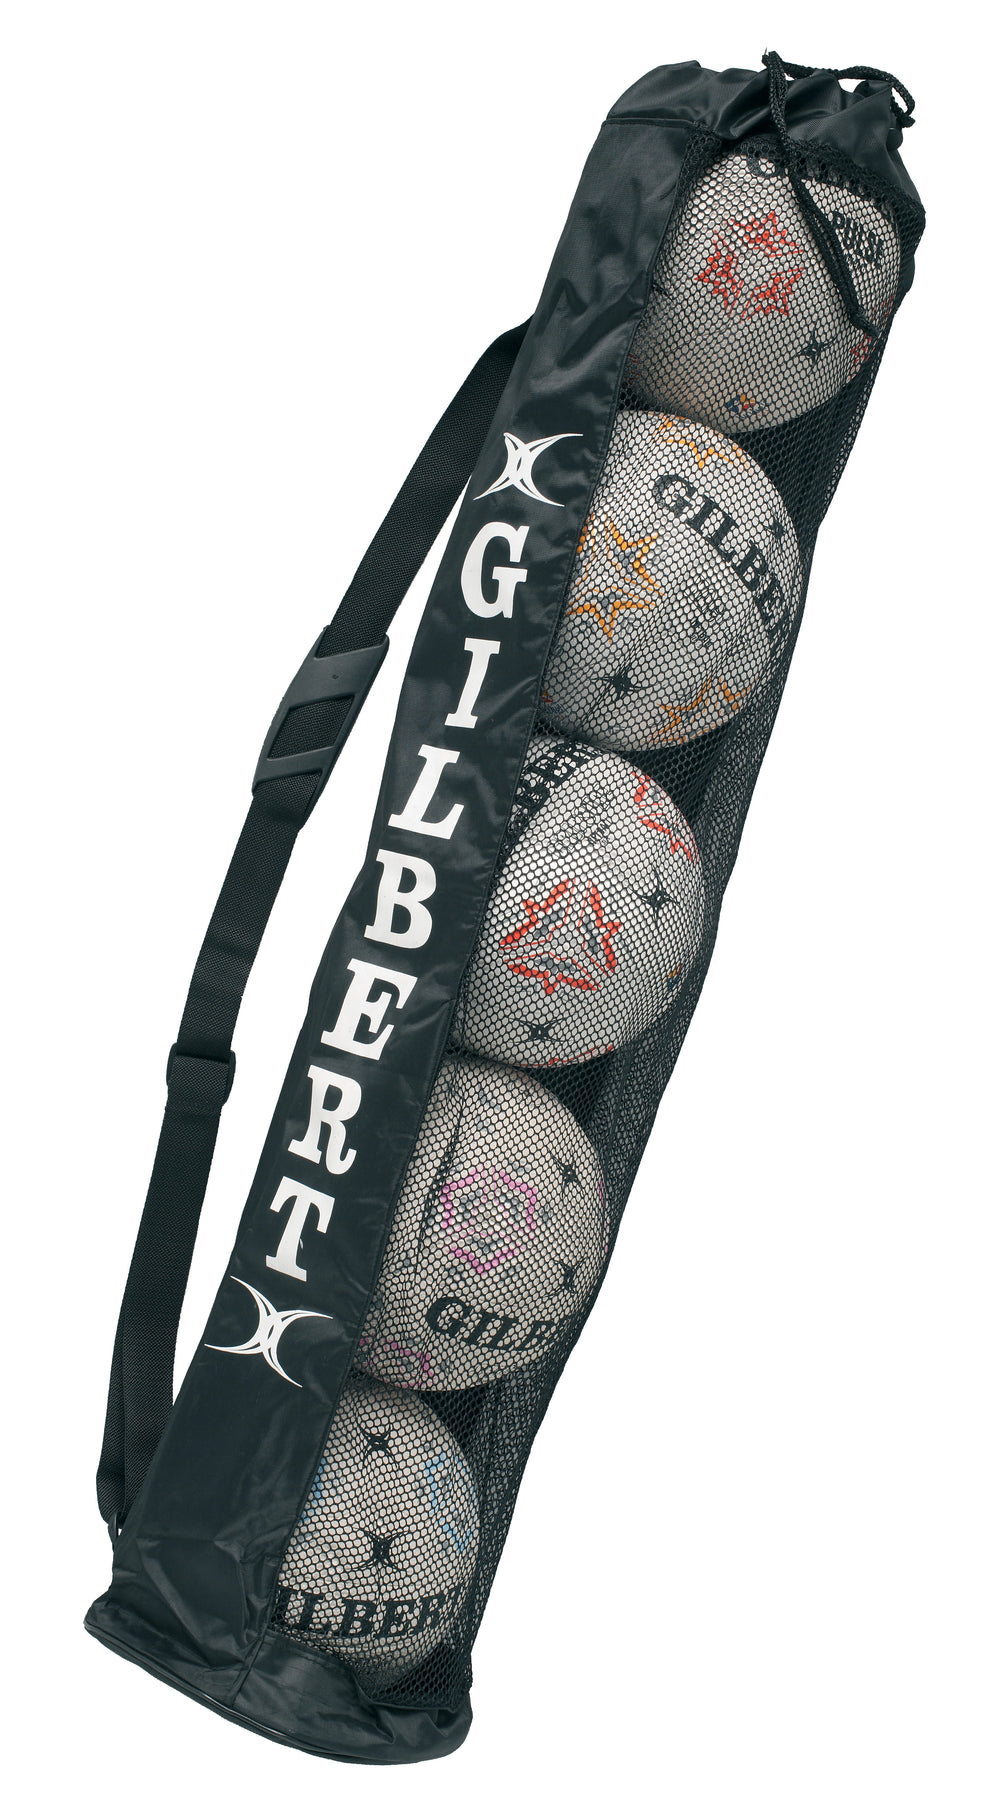 Gilbert Rugby Ball Tube (5 Ball Bag)